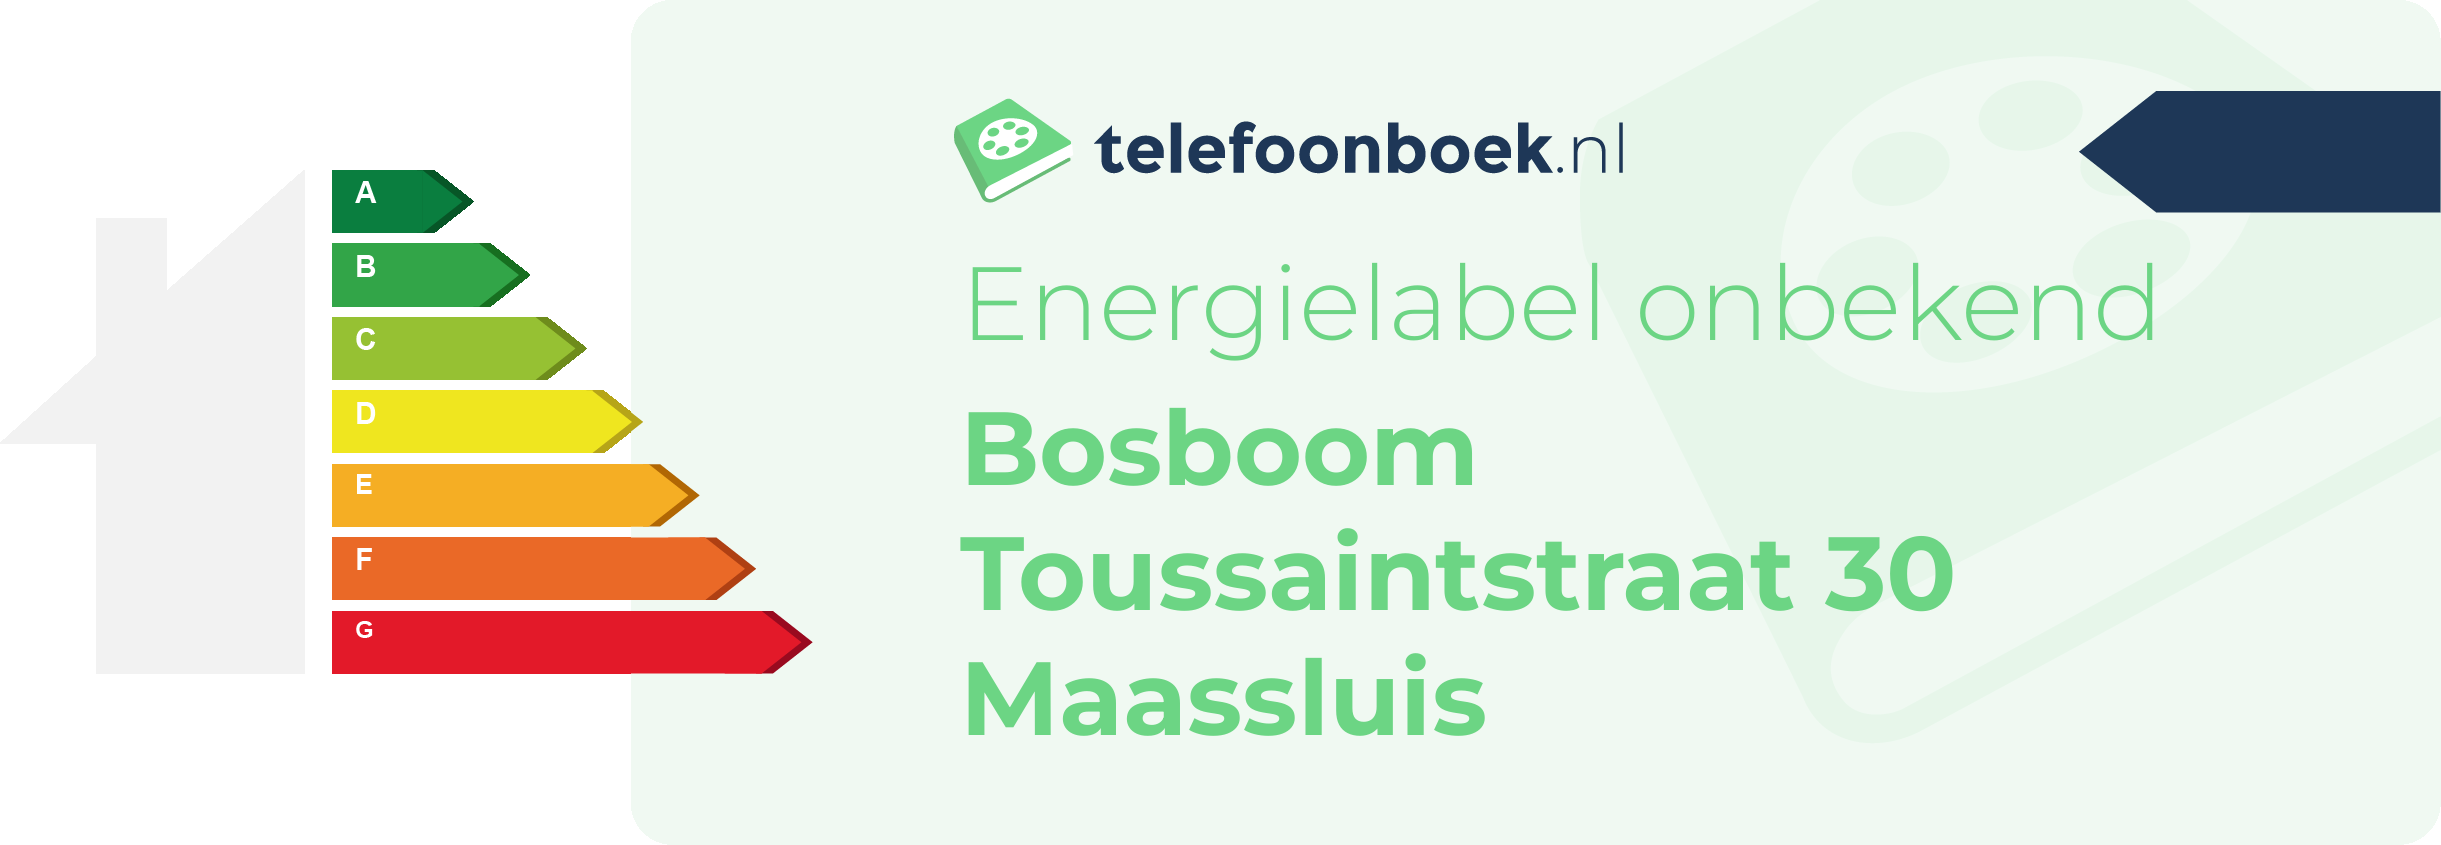 Energielabel Bosboom Toussaintstraat 30 Maassluis